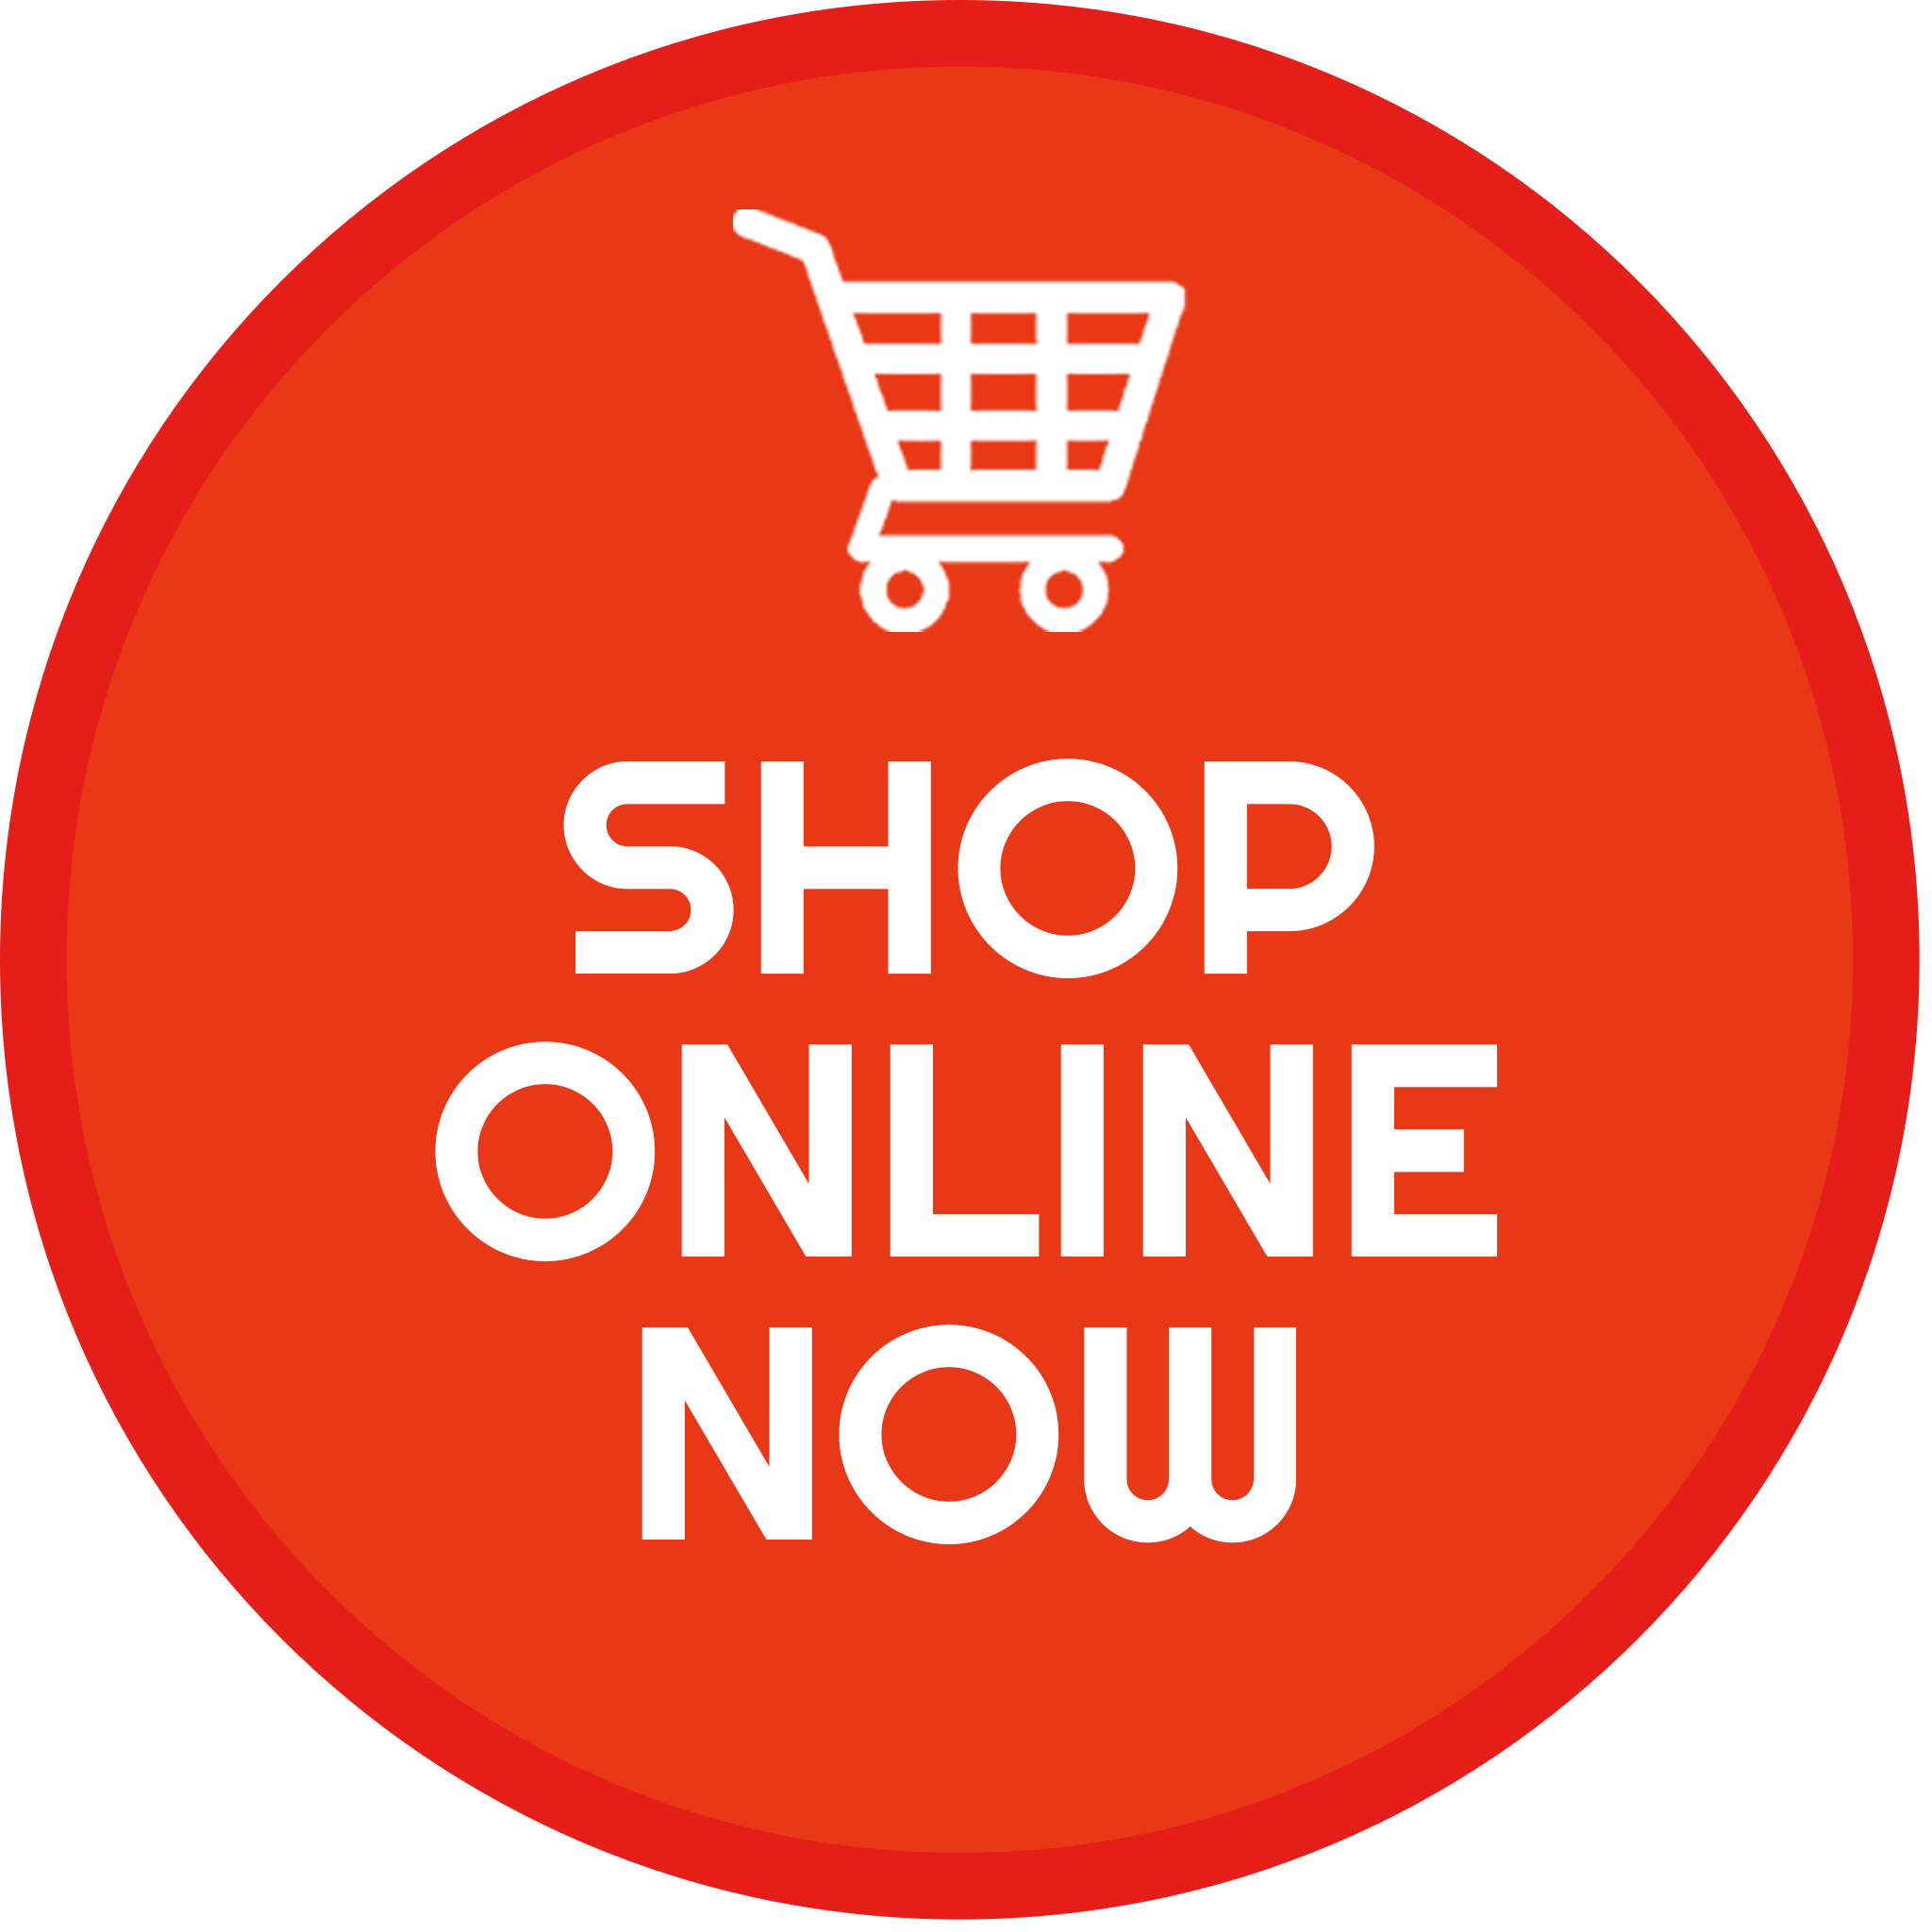 Shop online now